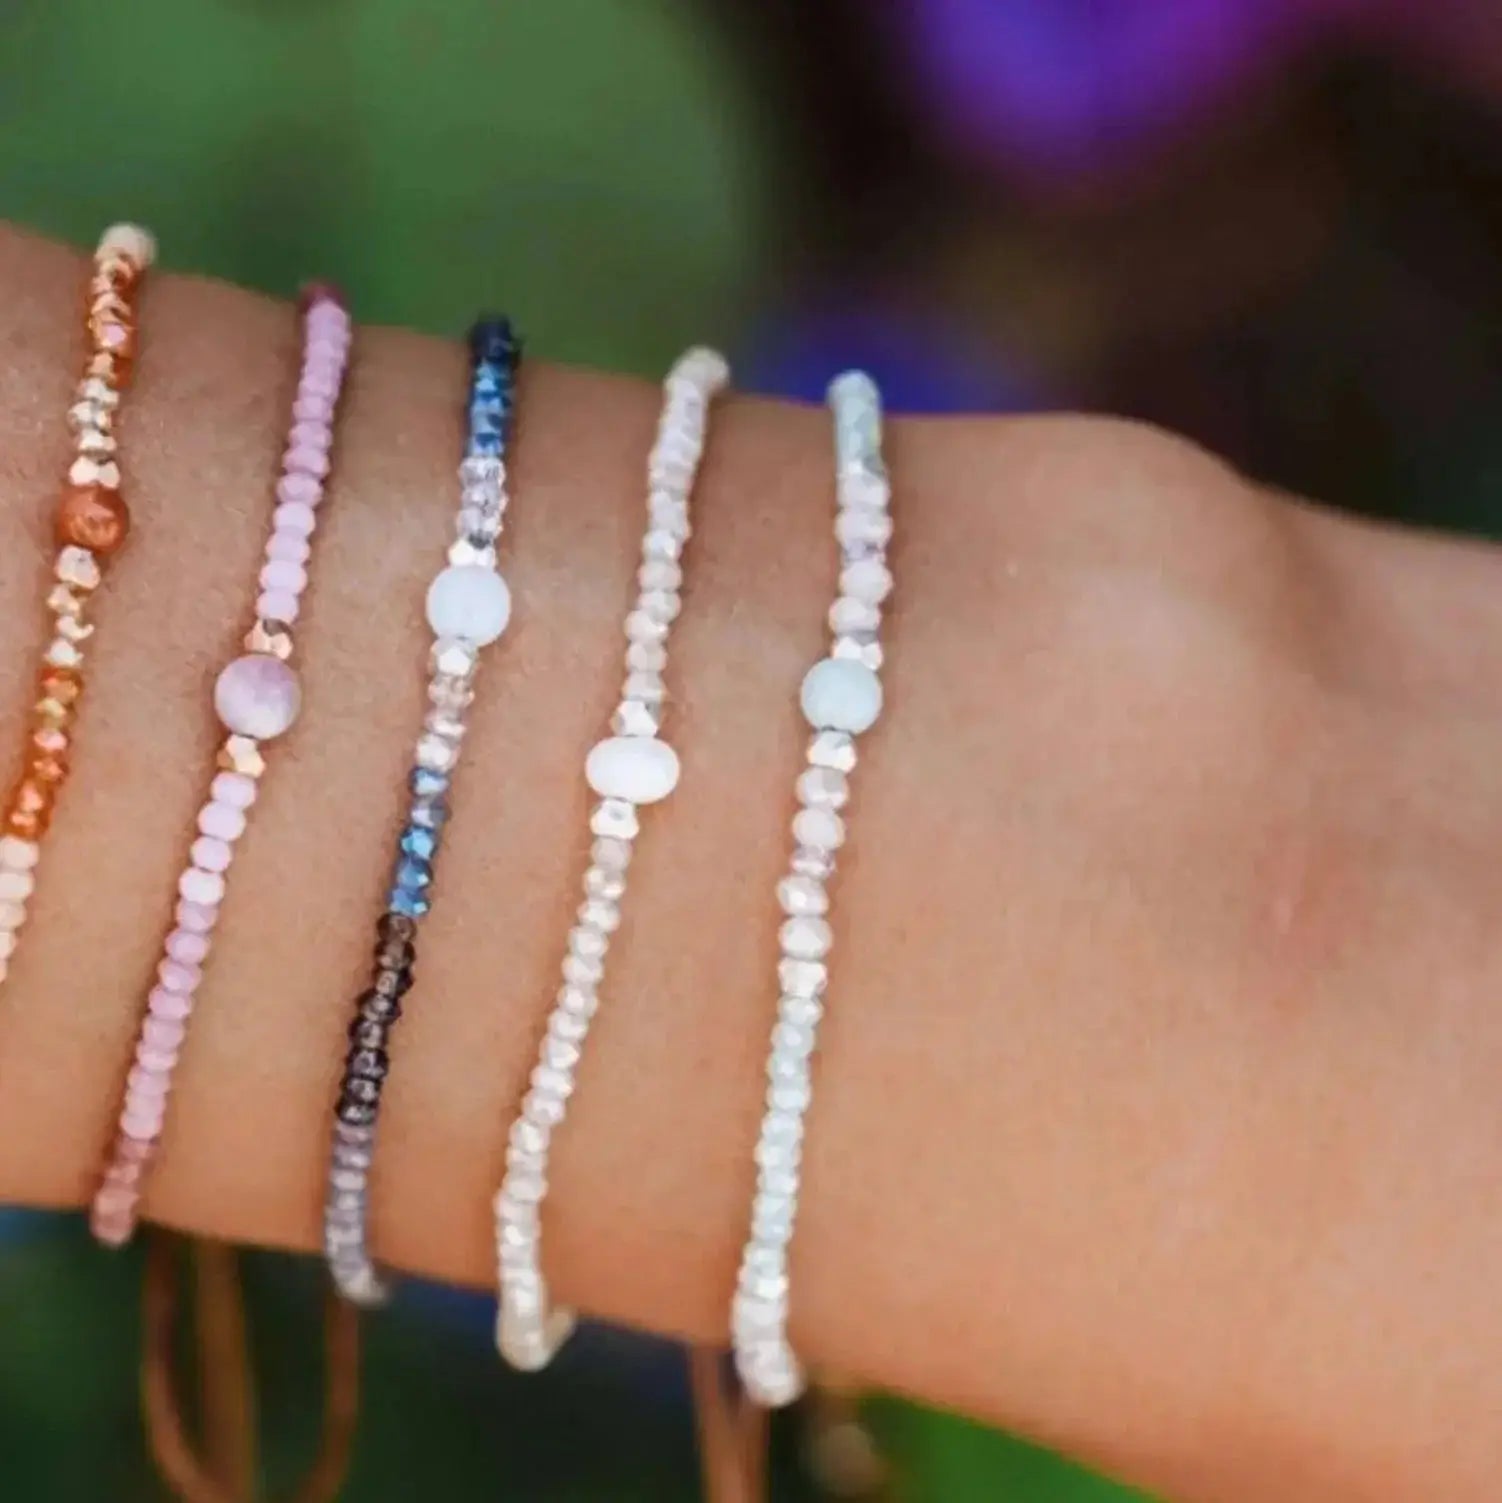 gemstone healing bracelets on a wrist